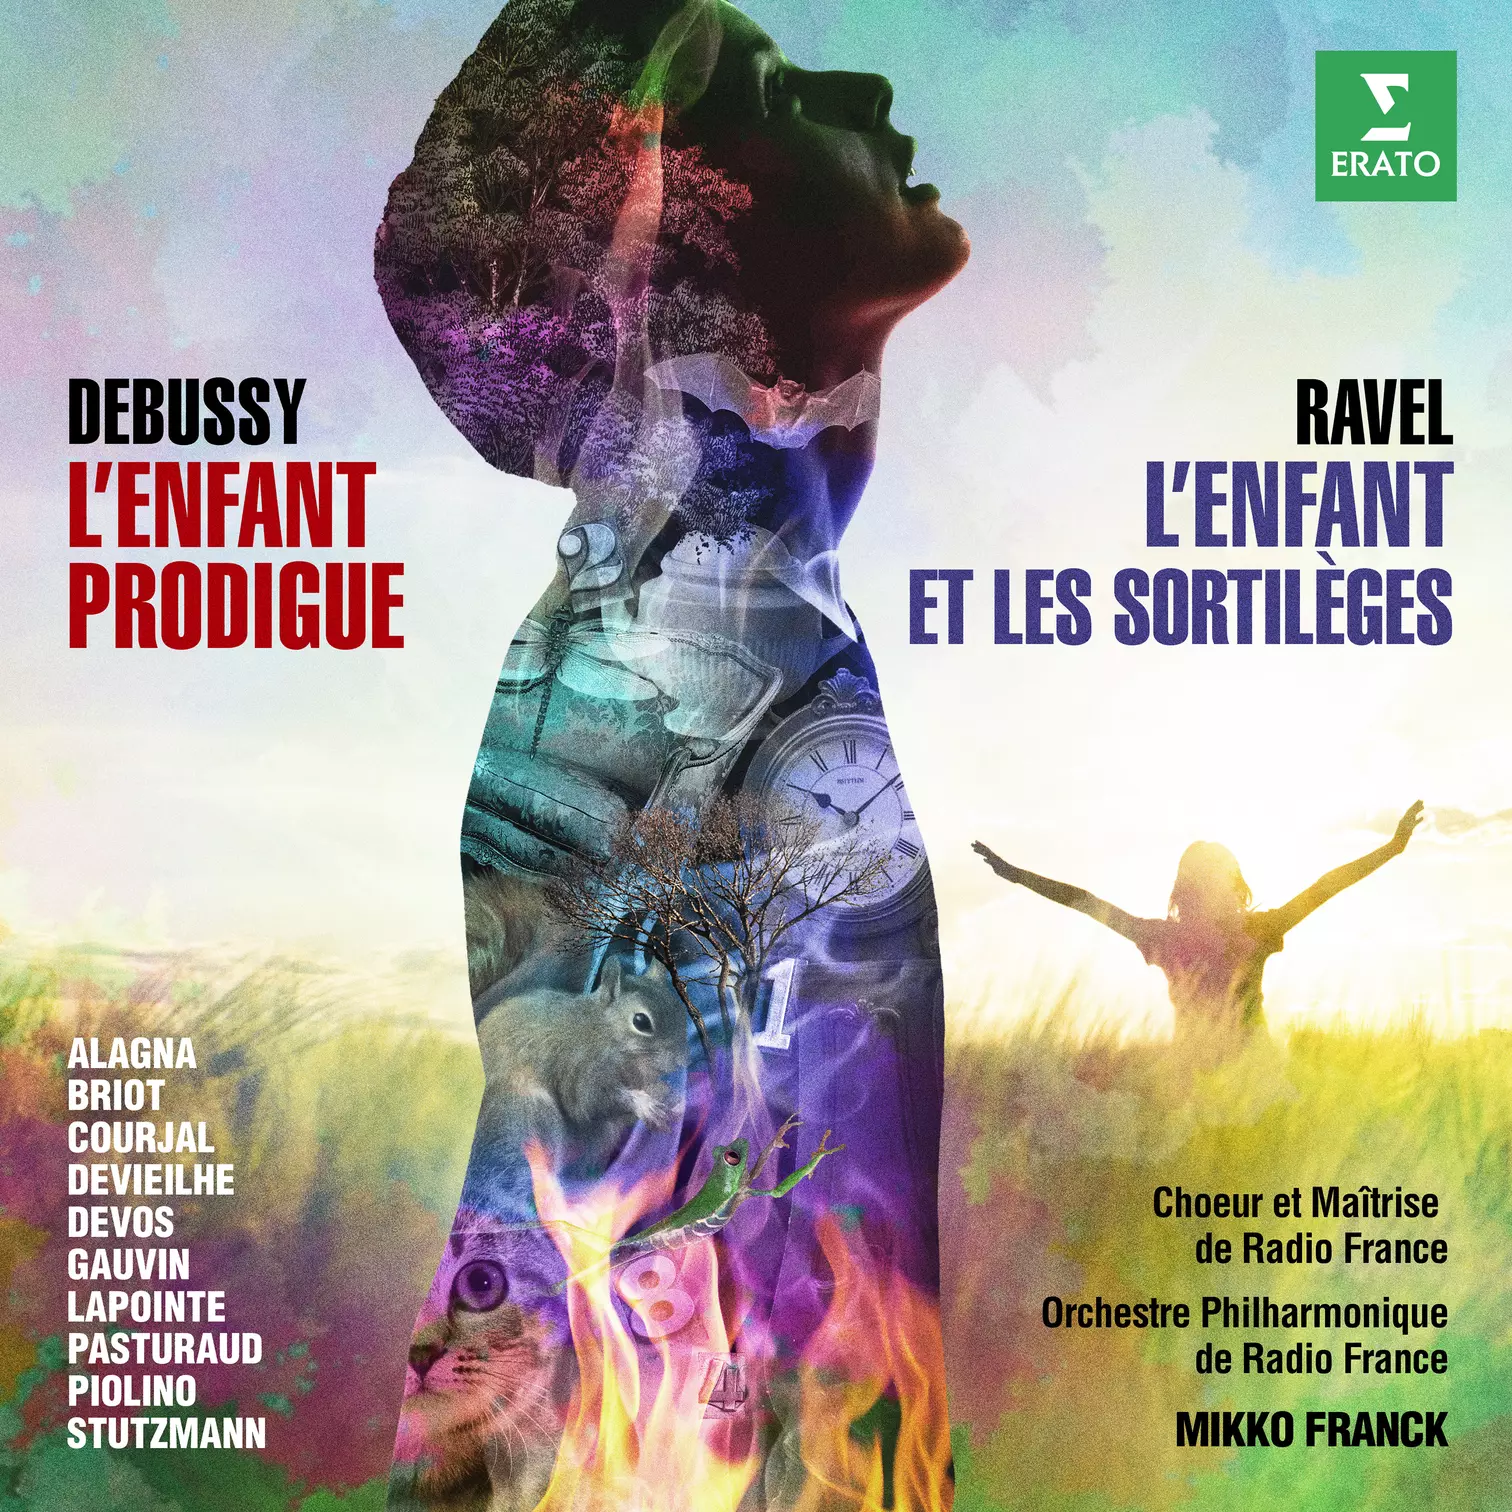 Debussy: L’Enfant prodigue, Ravel: L’Enfant et les Sortilèges